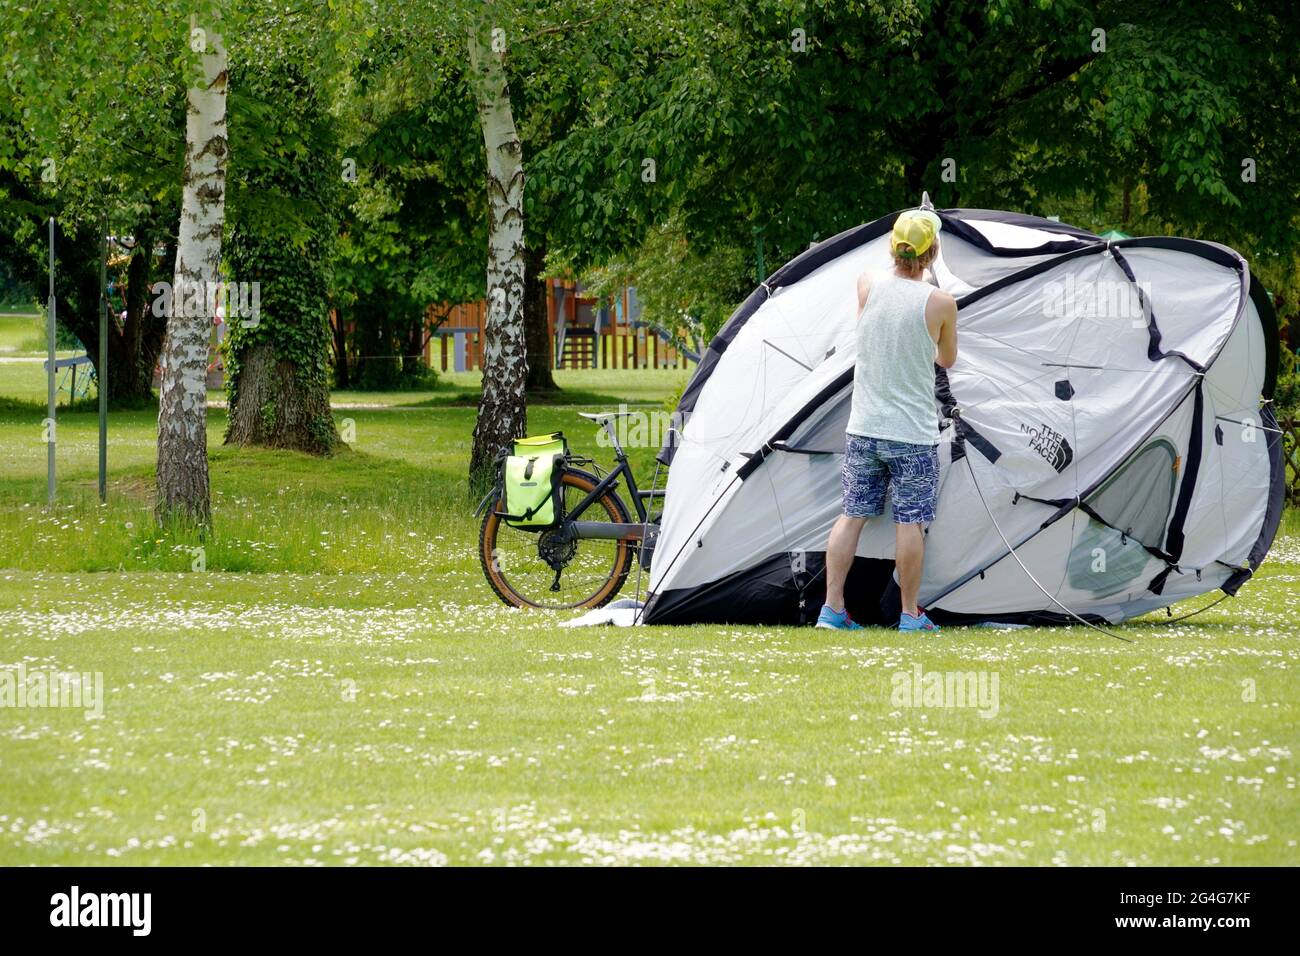 Kreuzlingen, Suisse 05 20 2021: Un homme qui a installé une tente dans un parc. Il y a du vélo derrière la tente. L'espace de copie est au premier plan. Banque D'Images